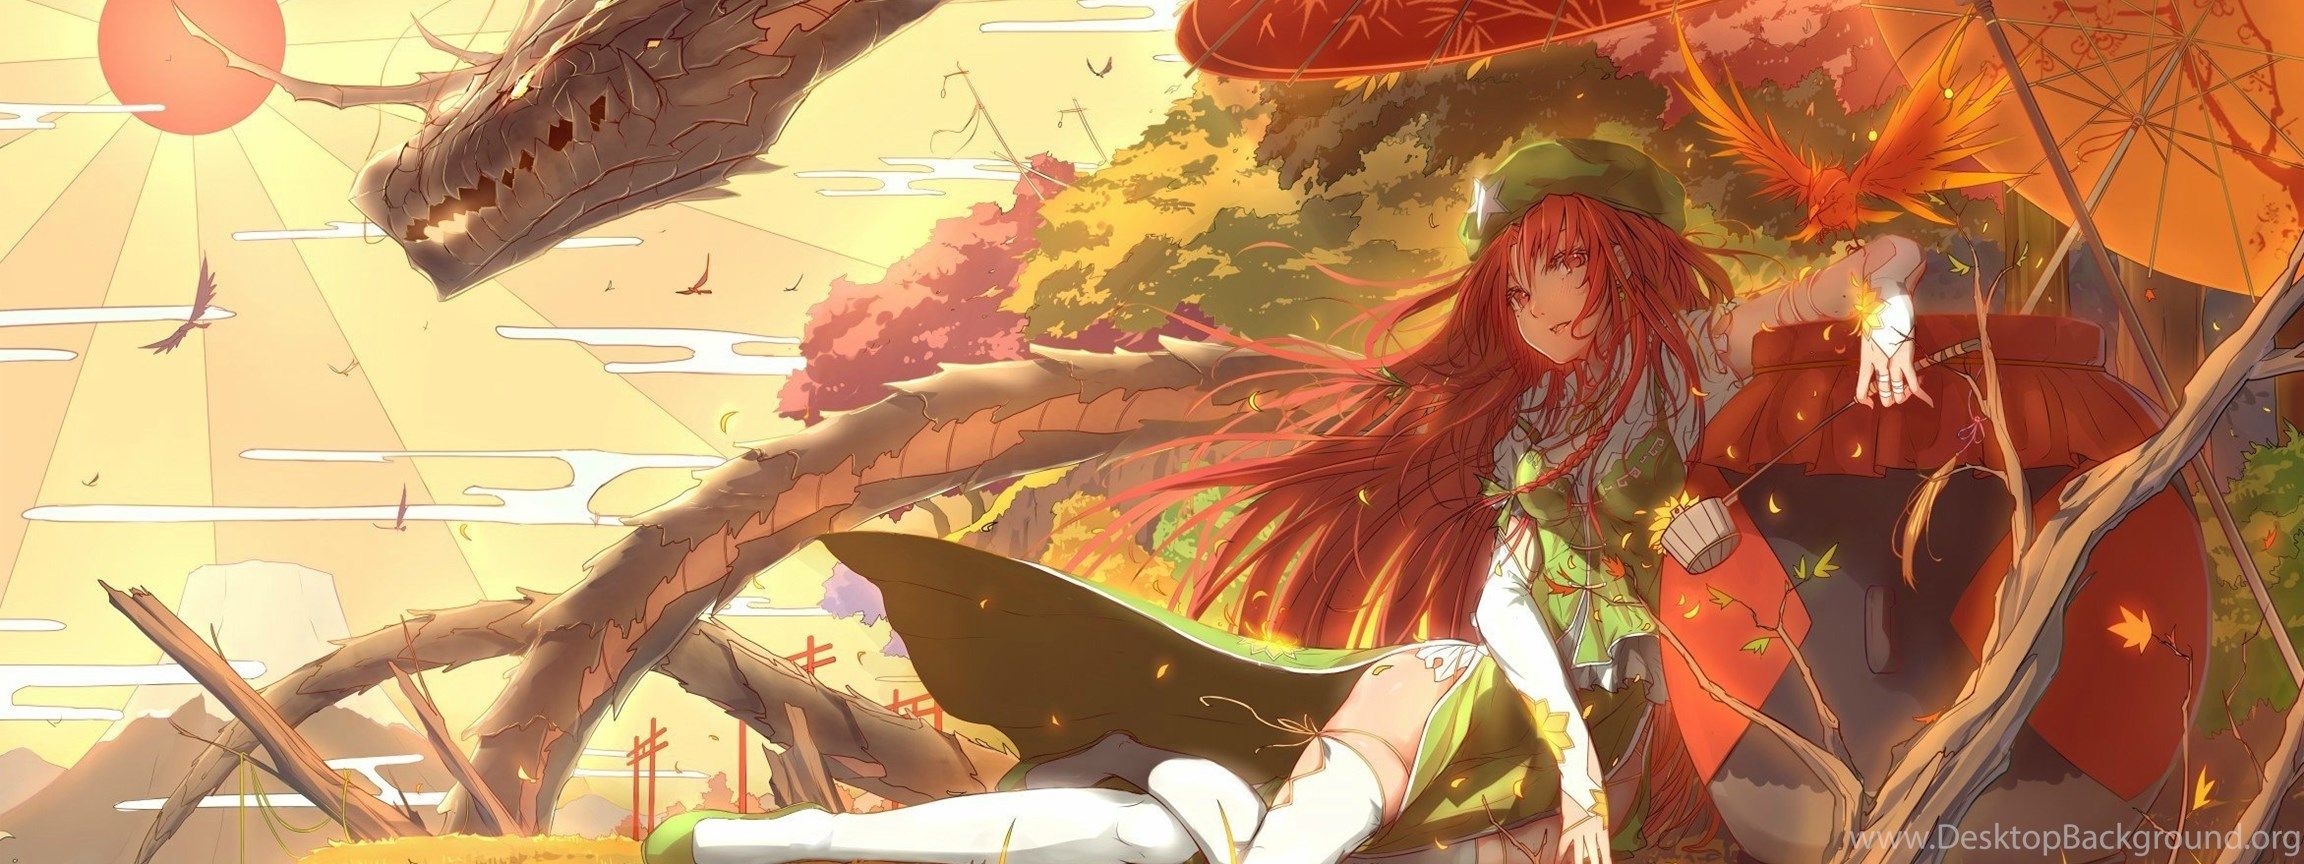 Fantasy / Sci fi Anime Wallpaper Dump Album On Imgur Desktop